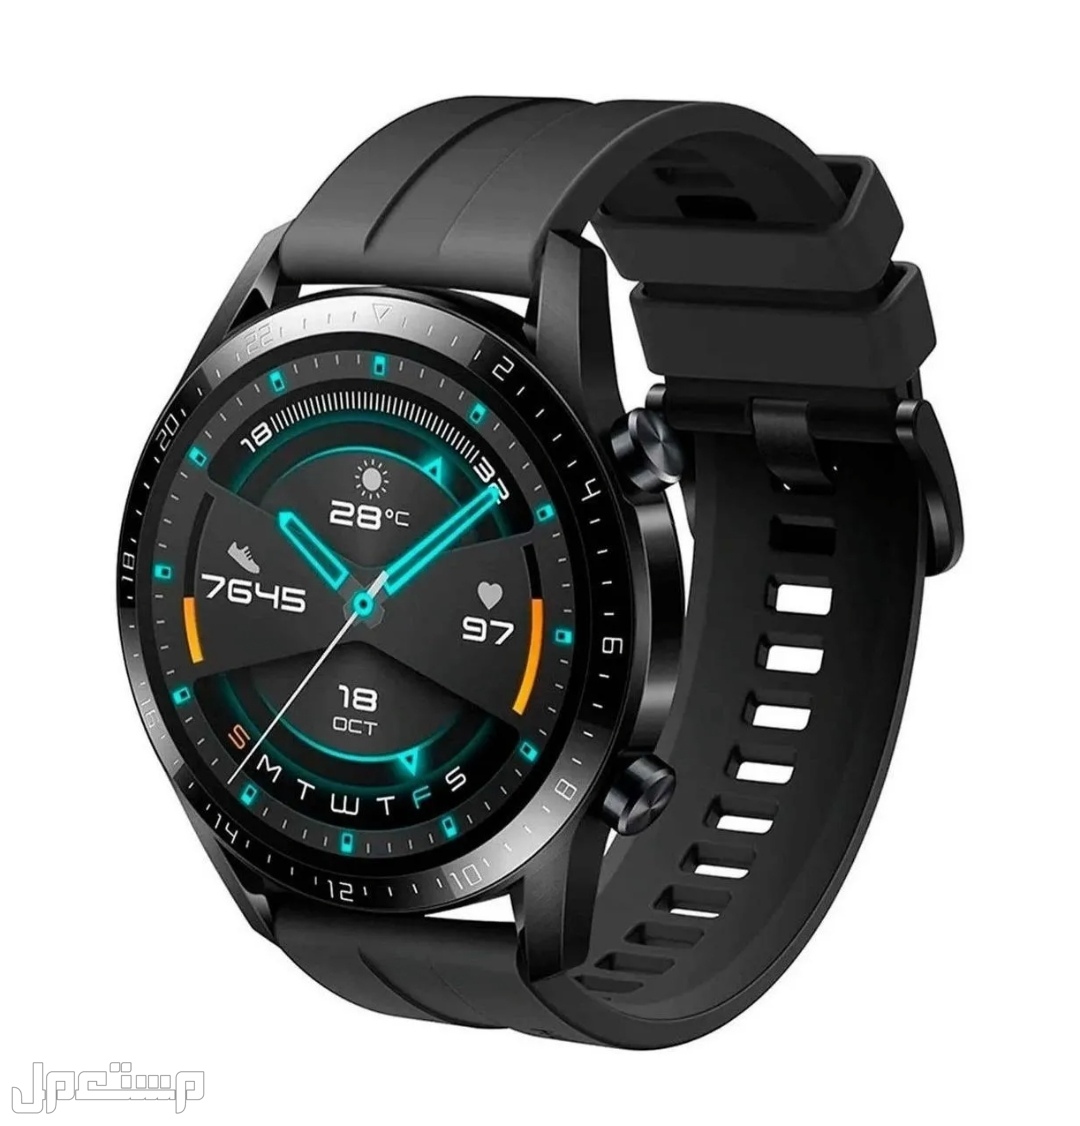 تعرف على أفضل ساعات ذكية للدراسة والعمل في الكويت Huawei Watch GT 2 Sport 1.39 "46mm